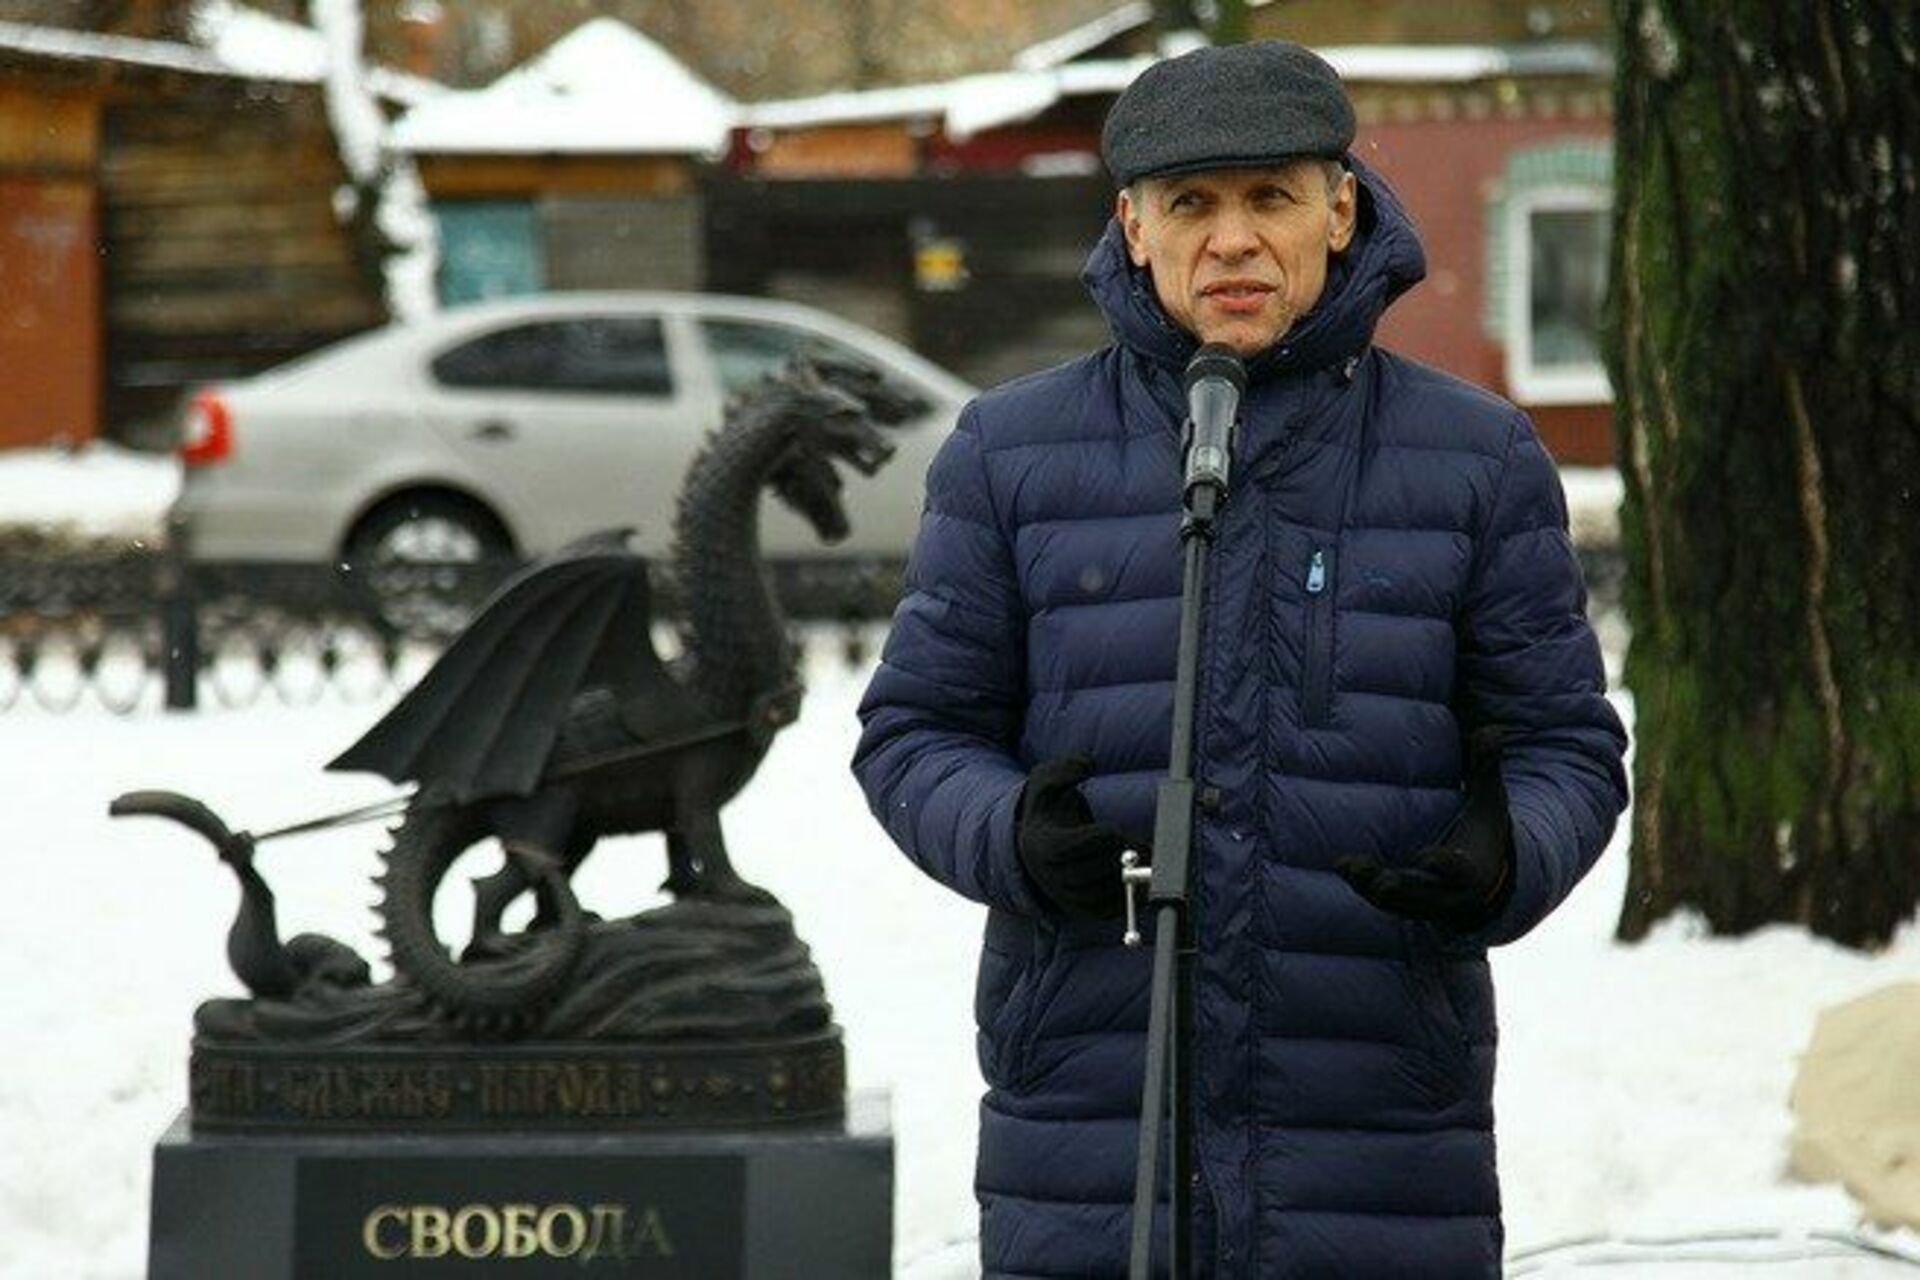 Костромские известные люди. Памятник свободе в Костроме. Еремин Кострома скульптура.